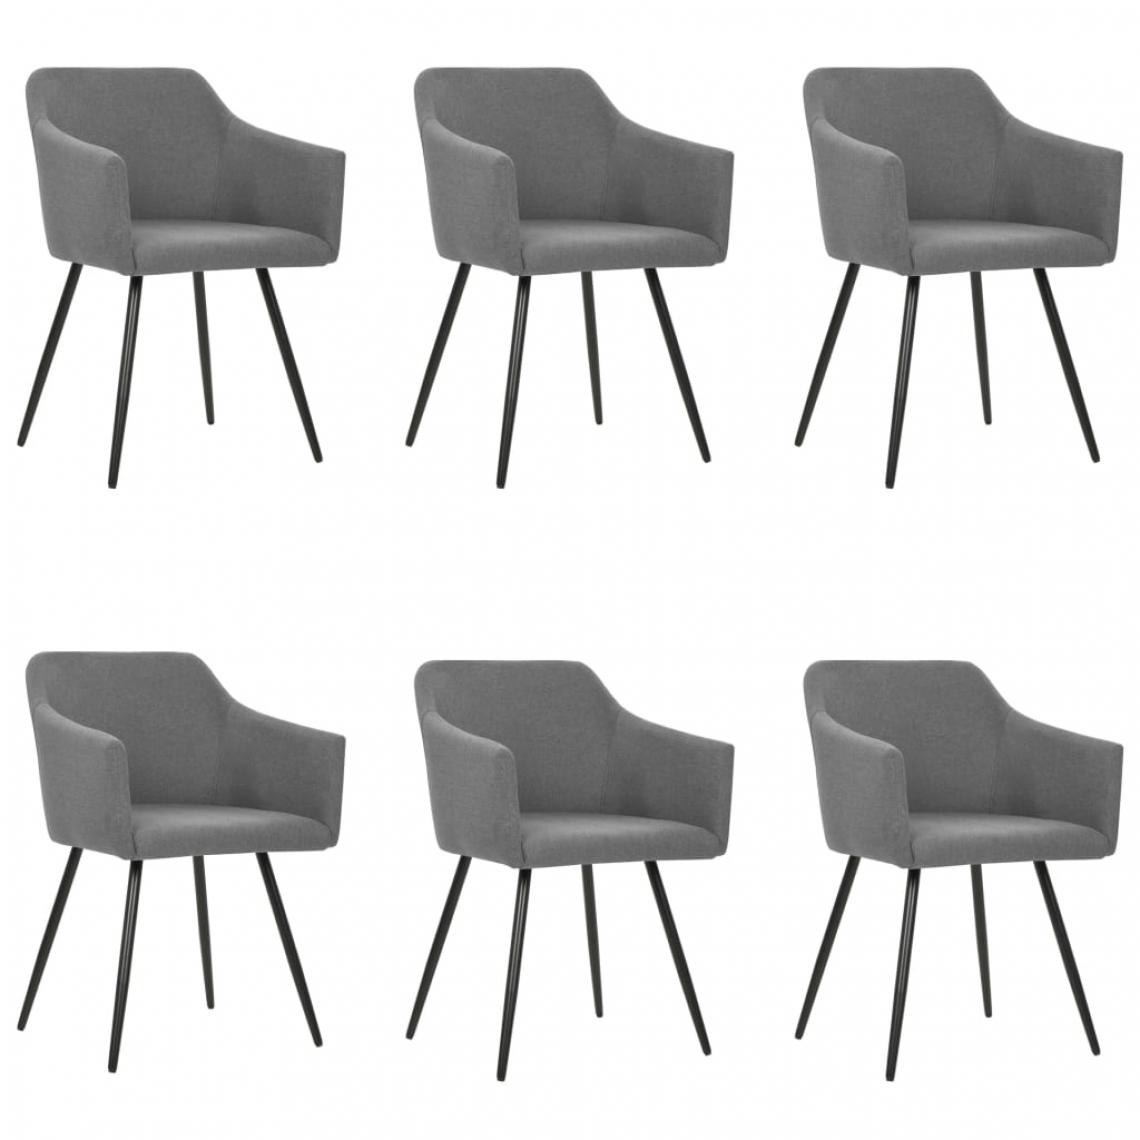 Icaverne - sublime Fauteuils et chaises reference Addis-Abeba Chaises de salle à manger 6 pcs Gris clair Tissu - Chaises